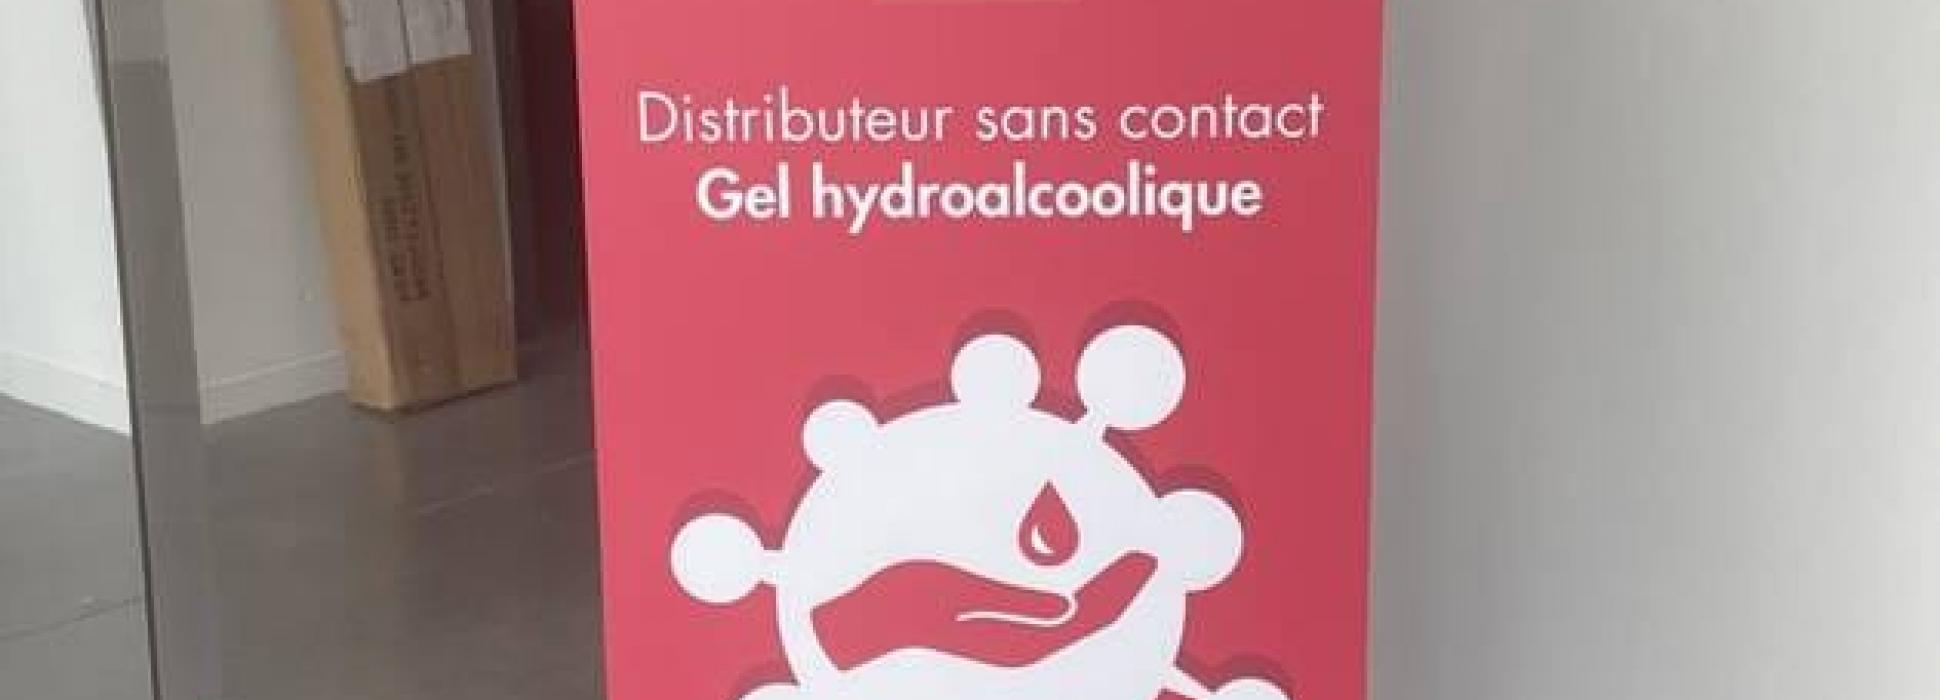 Covid 19: en Normandie, la société Printngo met au point un distributeur de gel hydroalcoolique sans contact